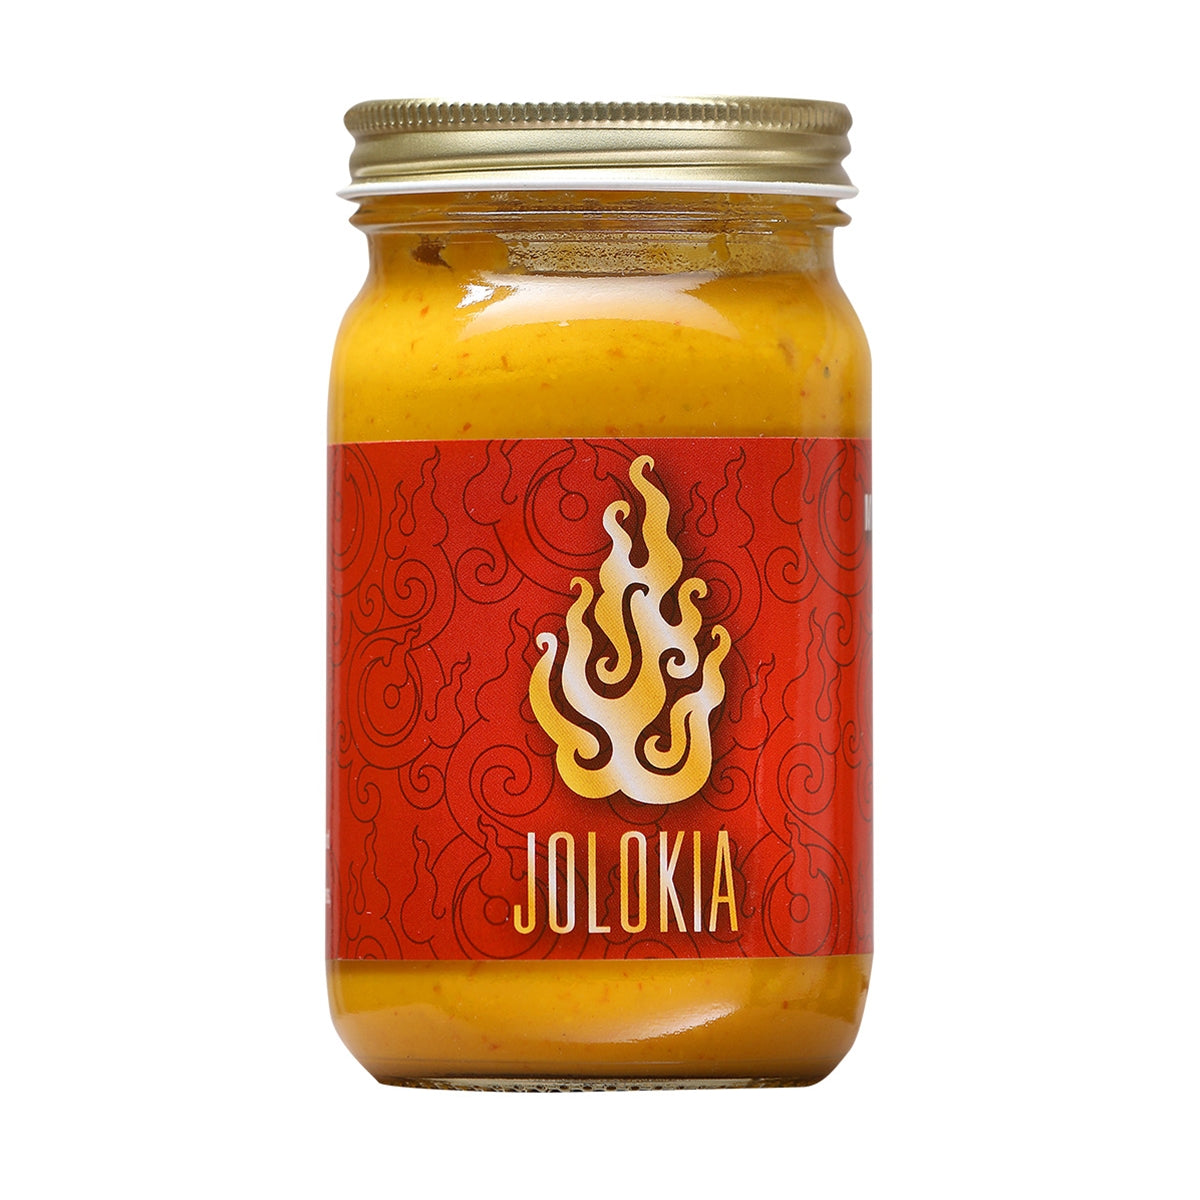 Cajohn's Jolokia Mustard 10